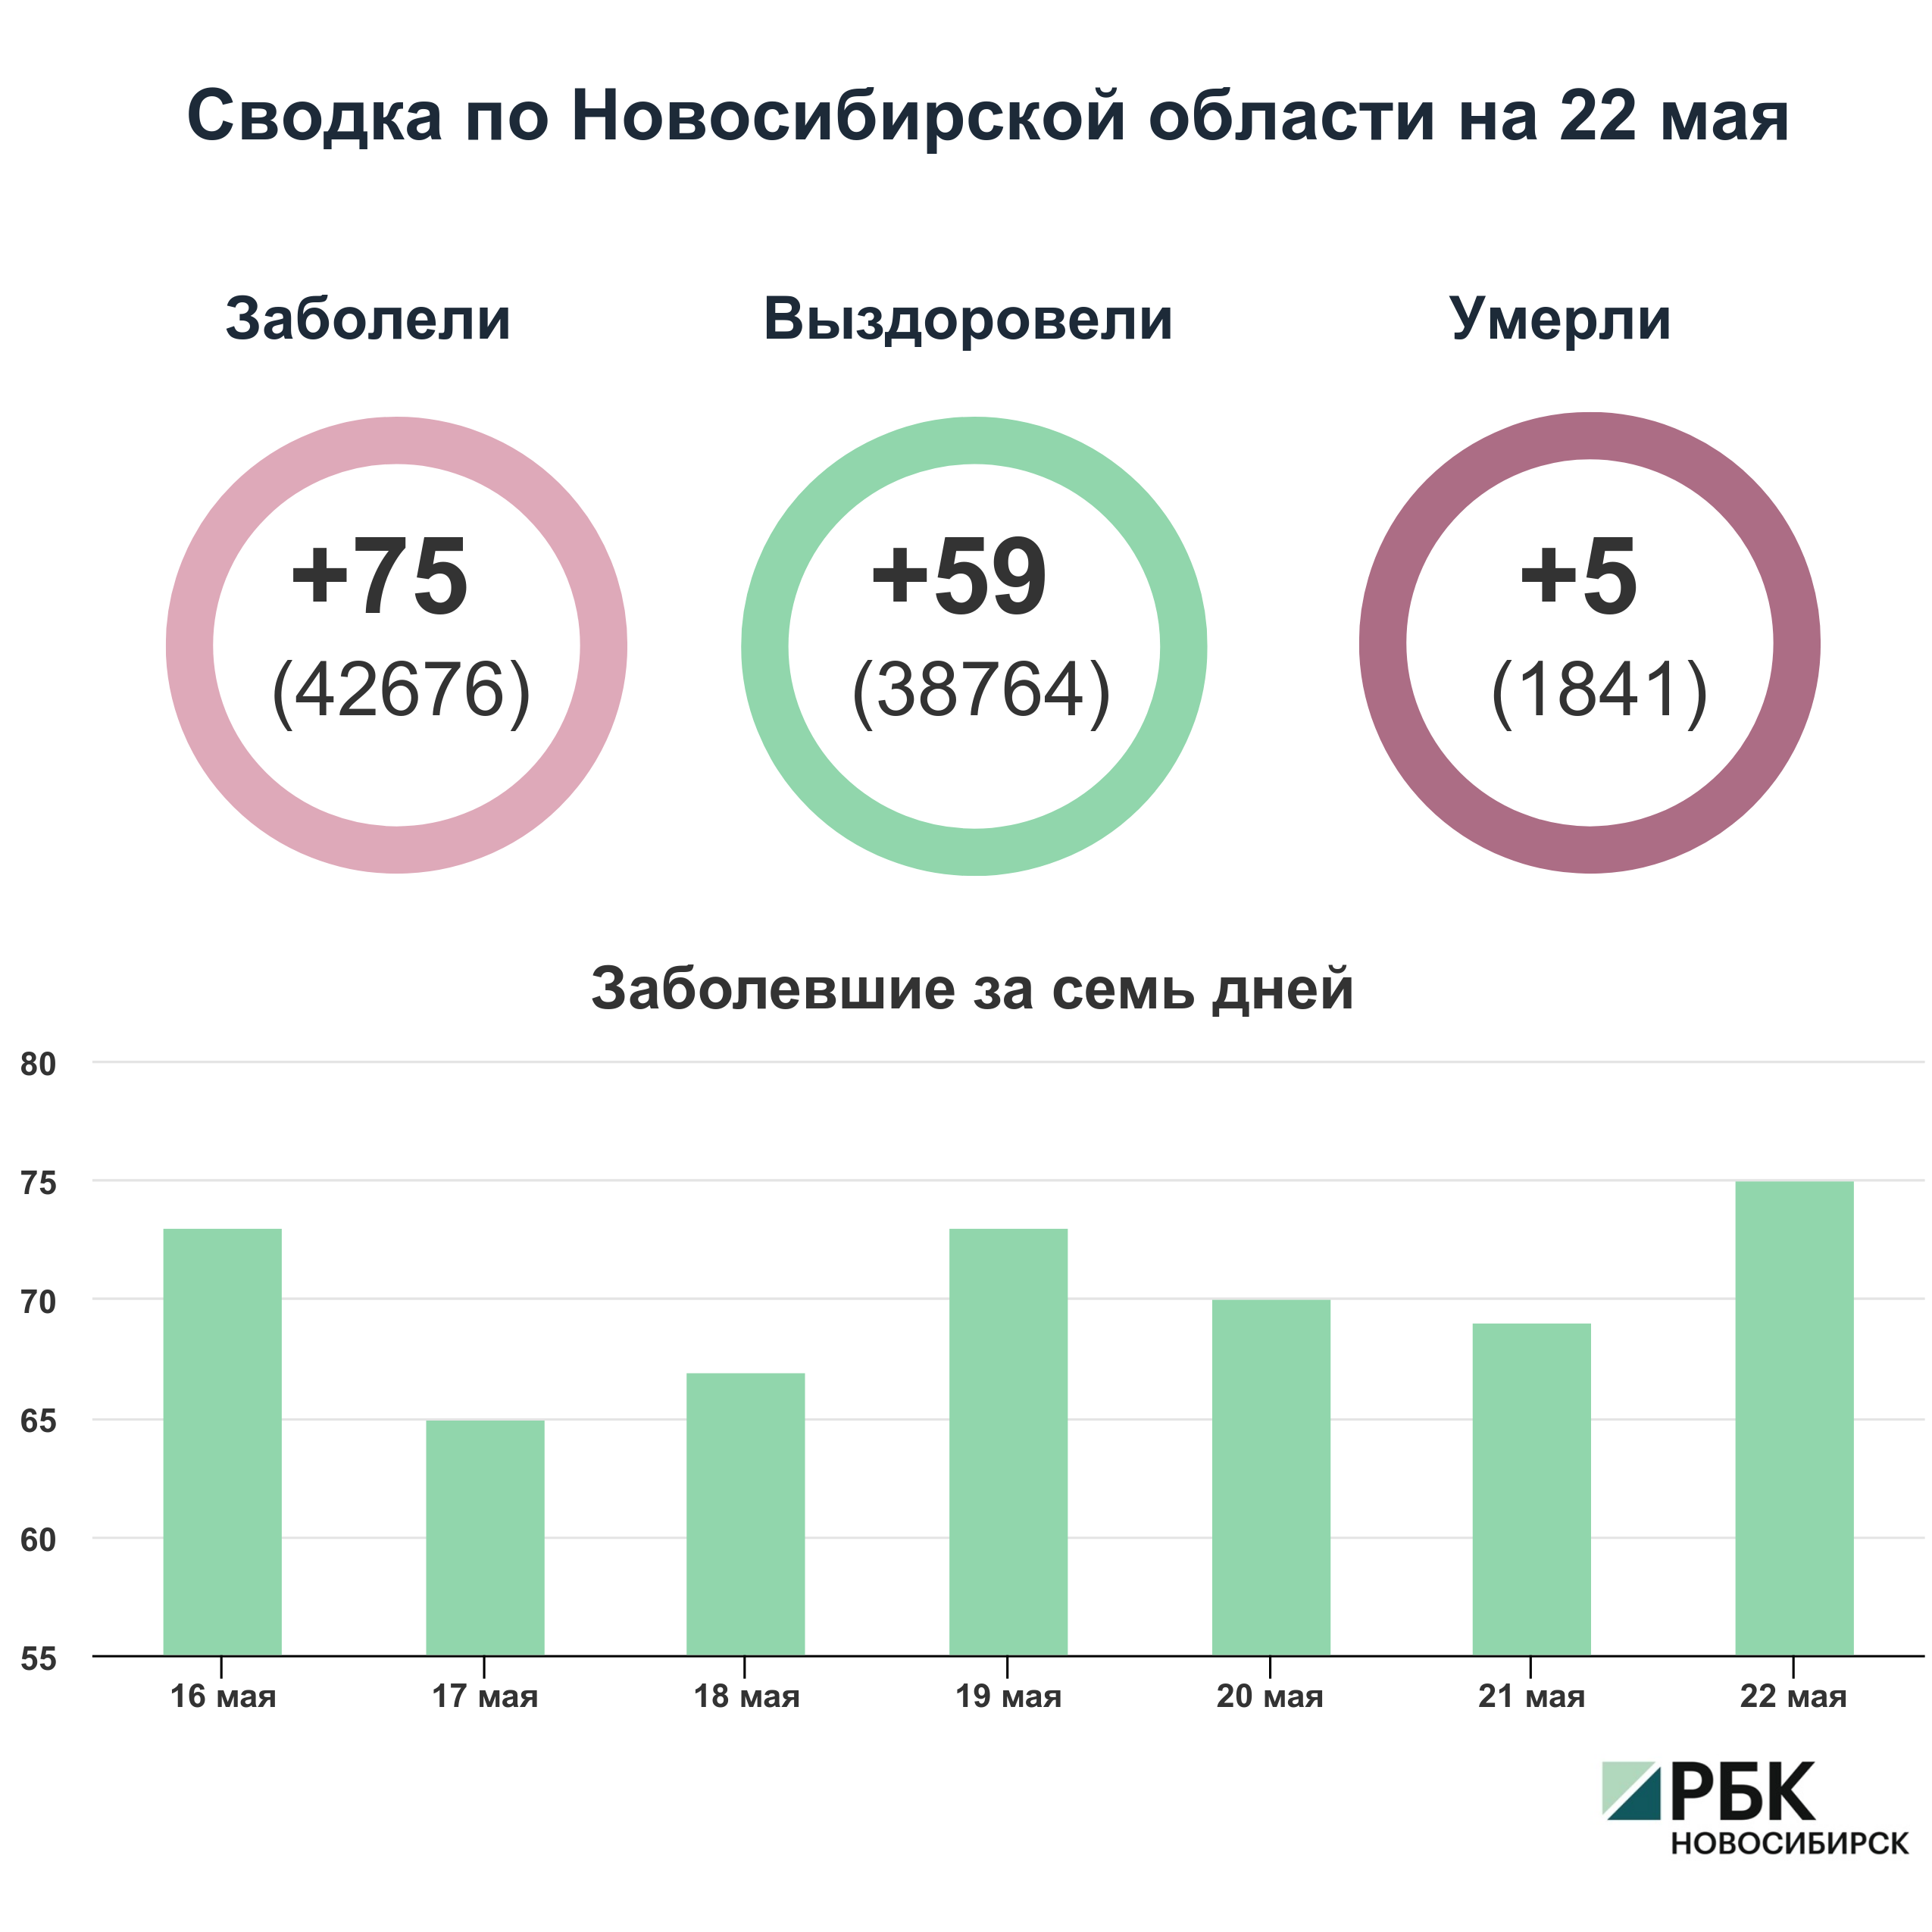 Коронавирус в Новосибирске: сводка на 22 мая